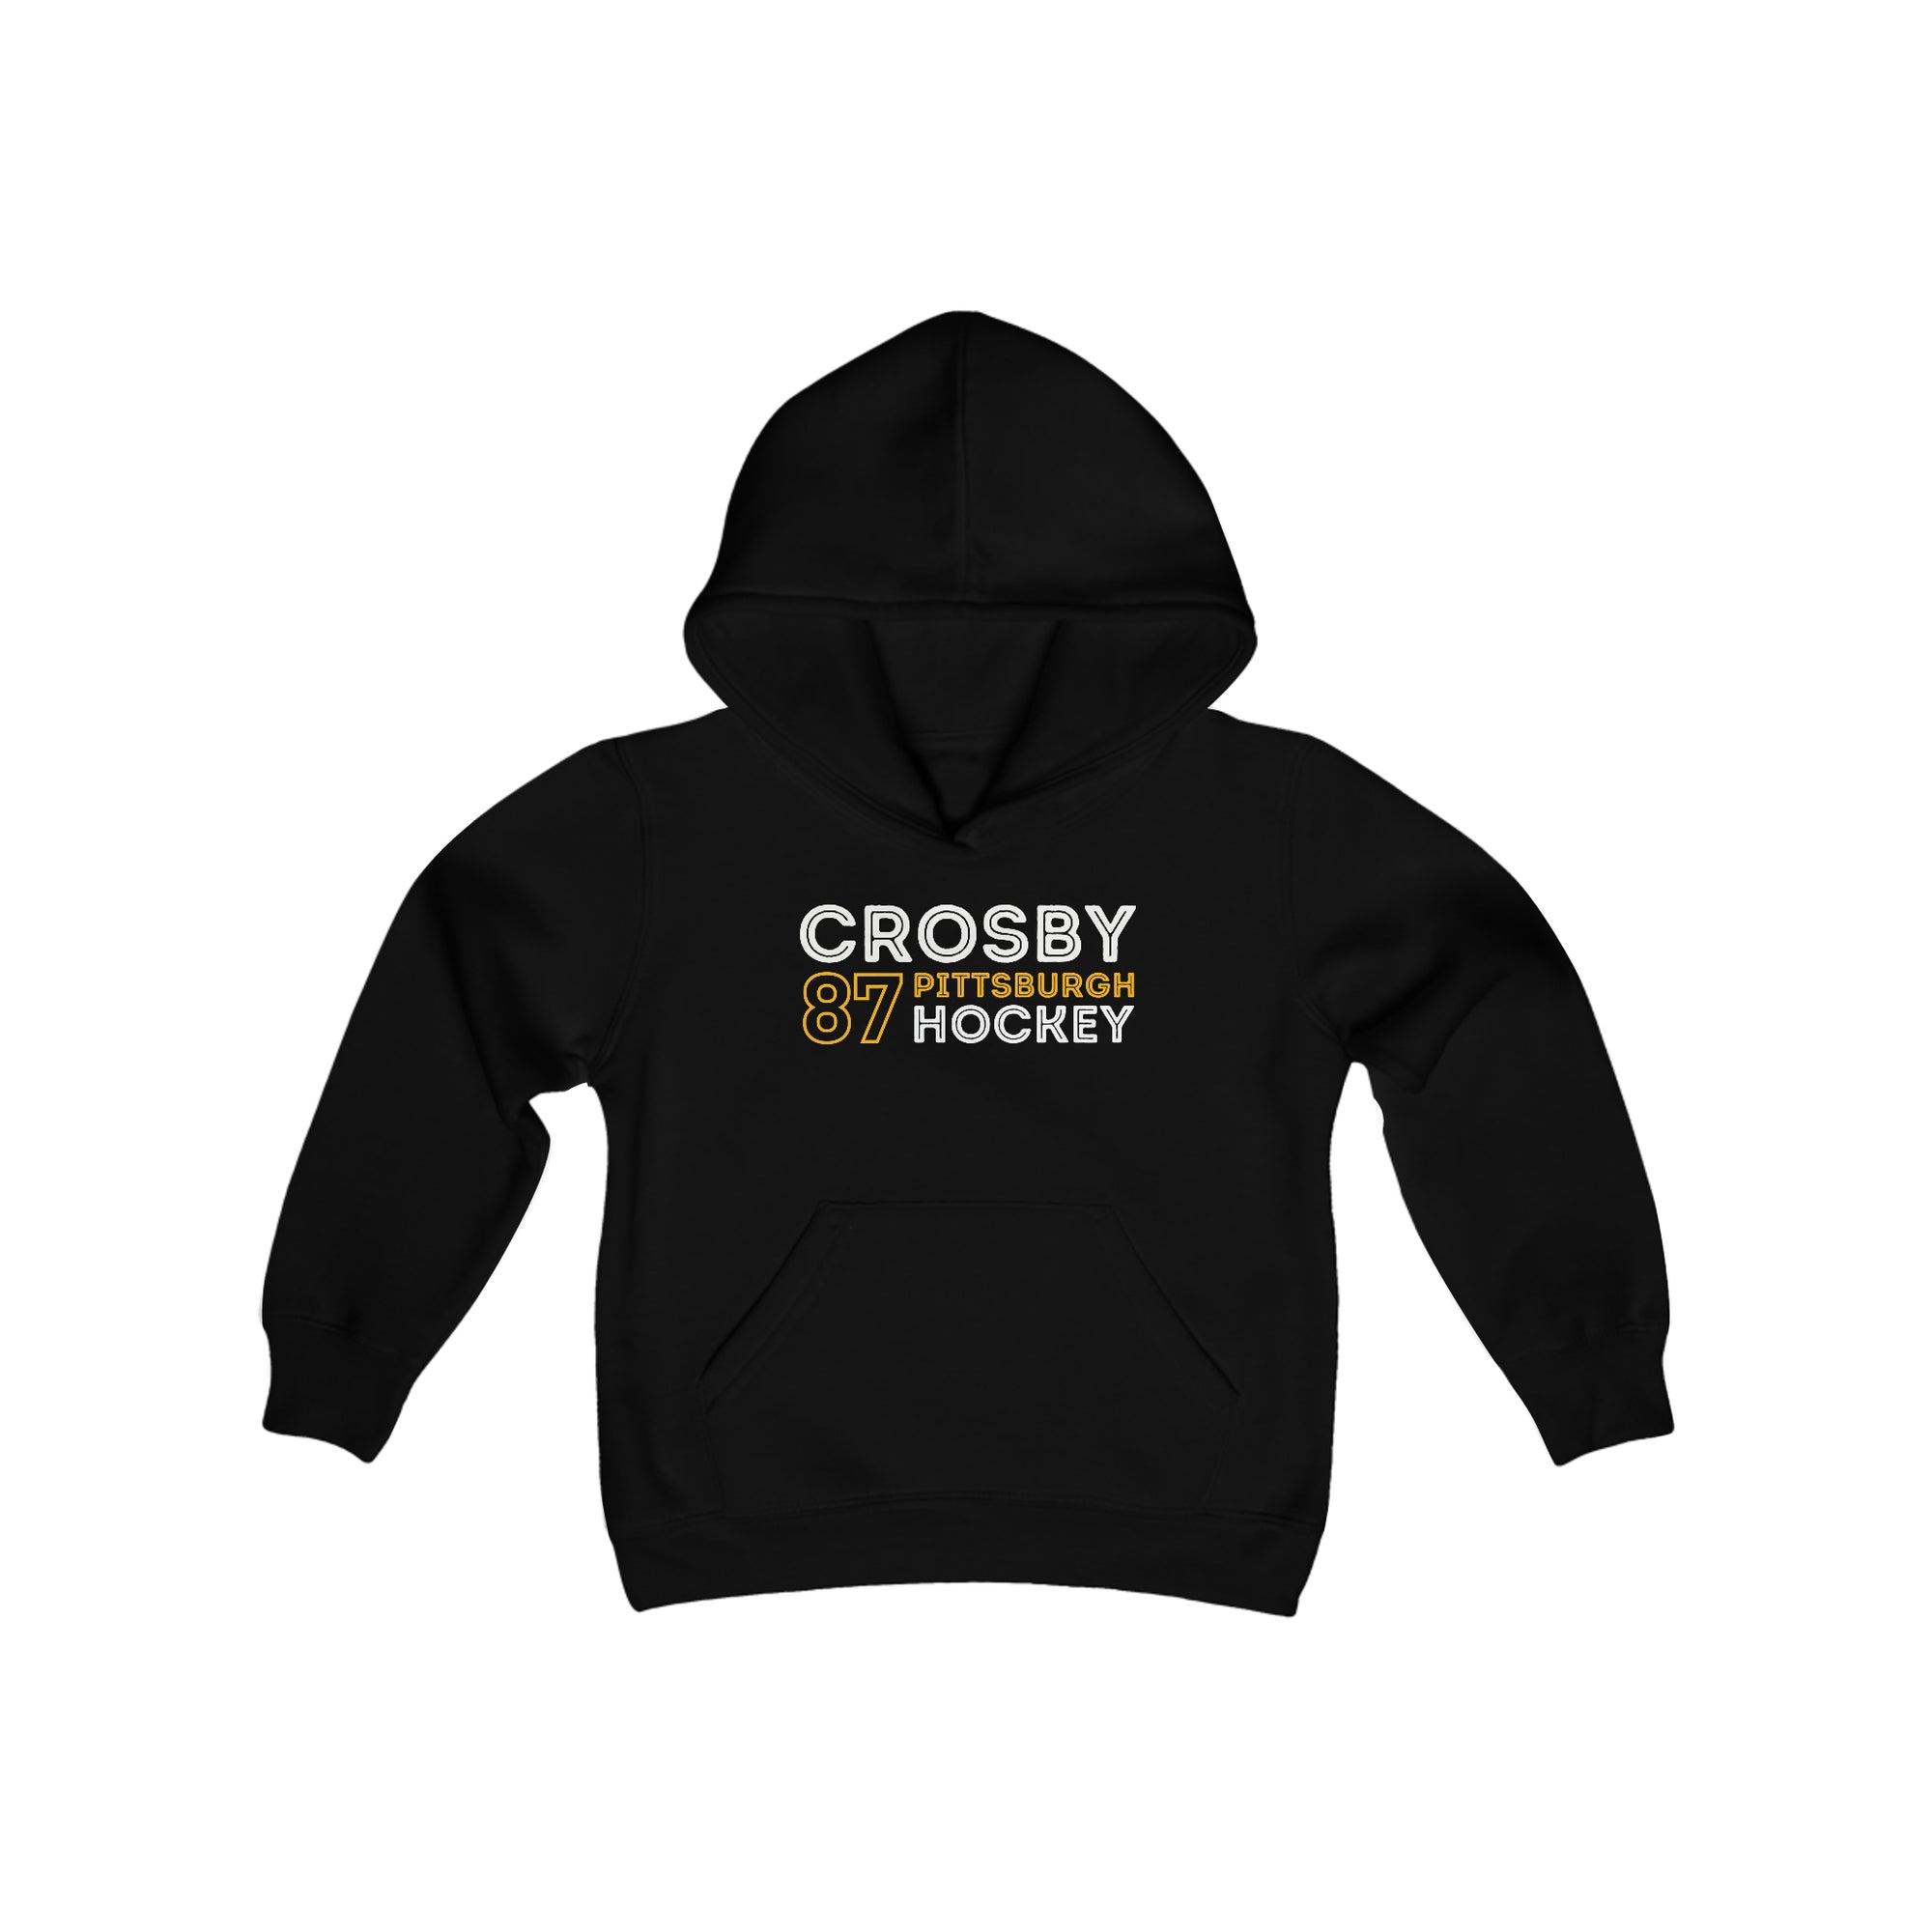 Crosby 87 Pittsburgh Hockey Grafitti Wall Design Youth Hooded Sweatshirt